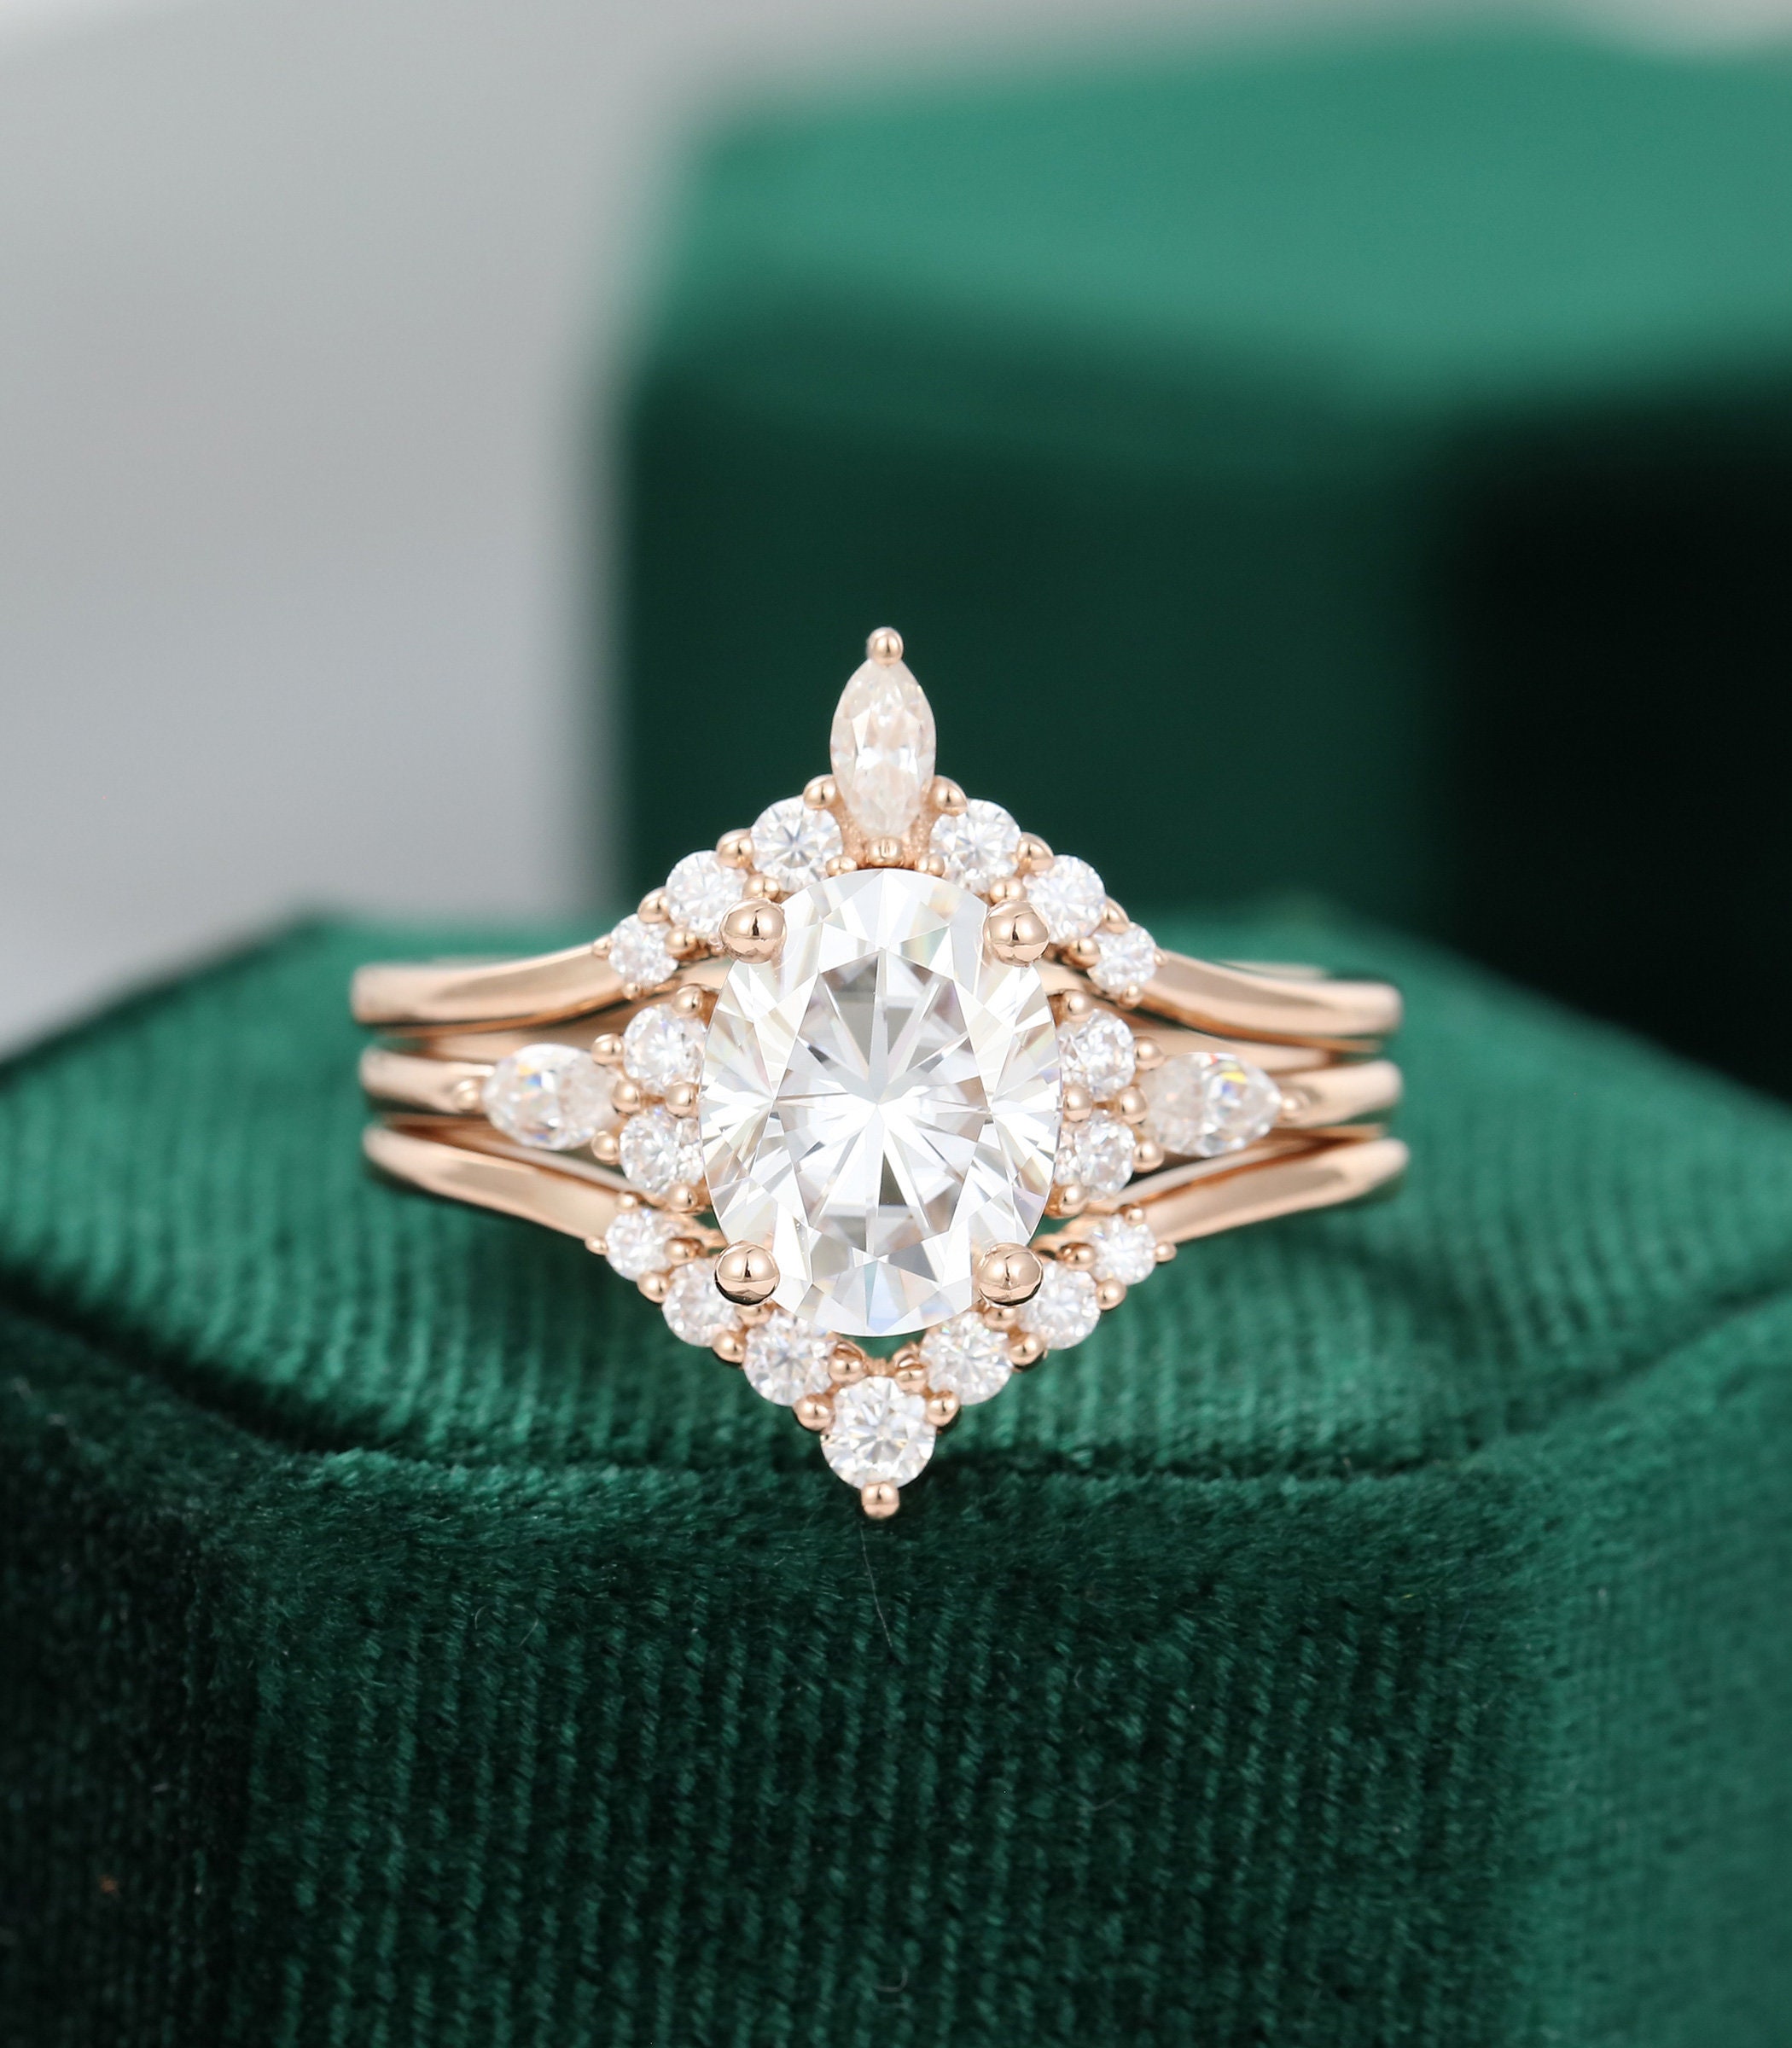 3pcs Oval Moissanite engagement ring set vintage unique rose | Etsy